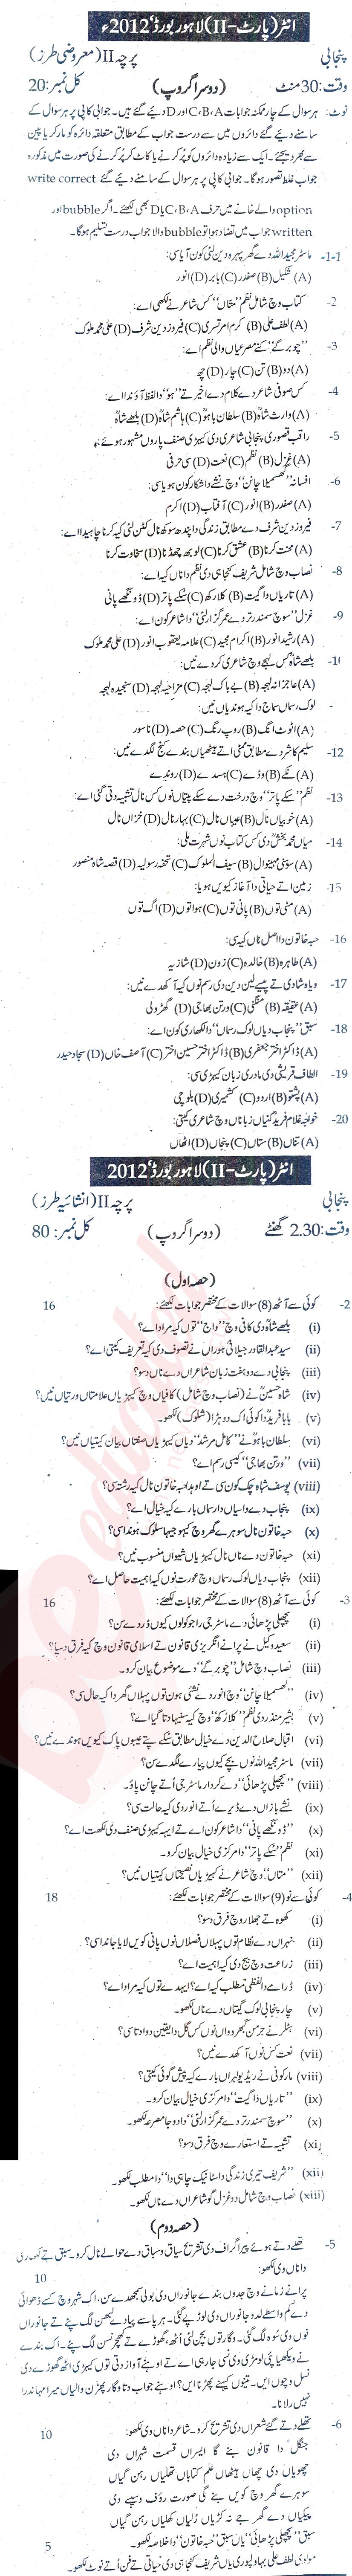 Punjabi FA Part 2 Past Paper Group 2 BISE Lahore 2012